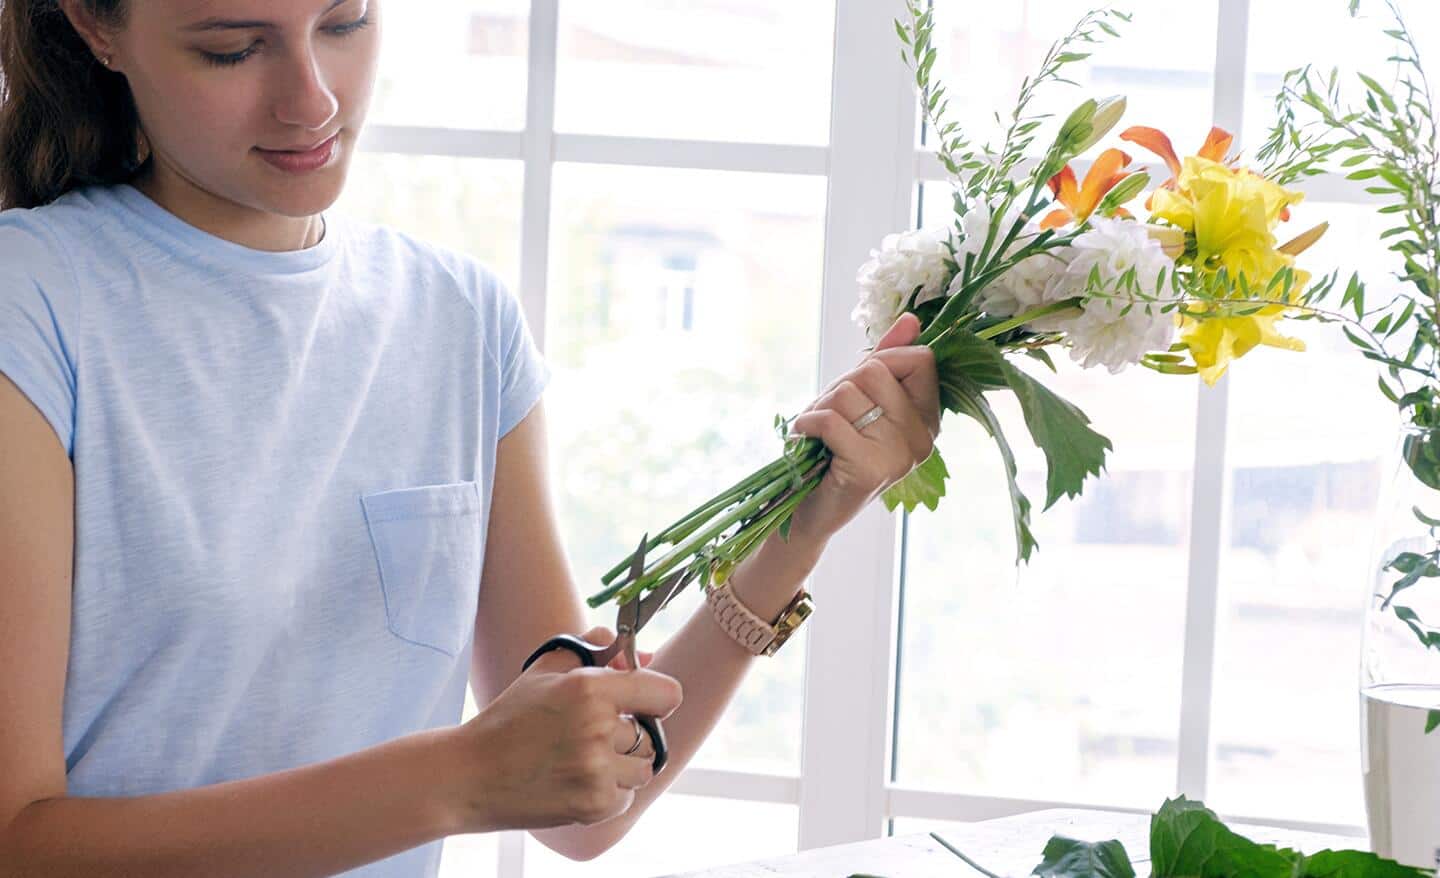 Person trims floral bouquet with floral scissors